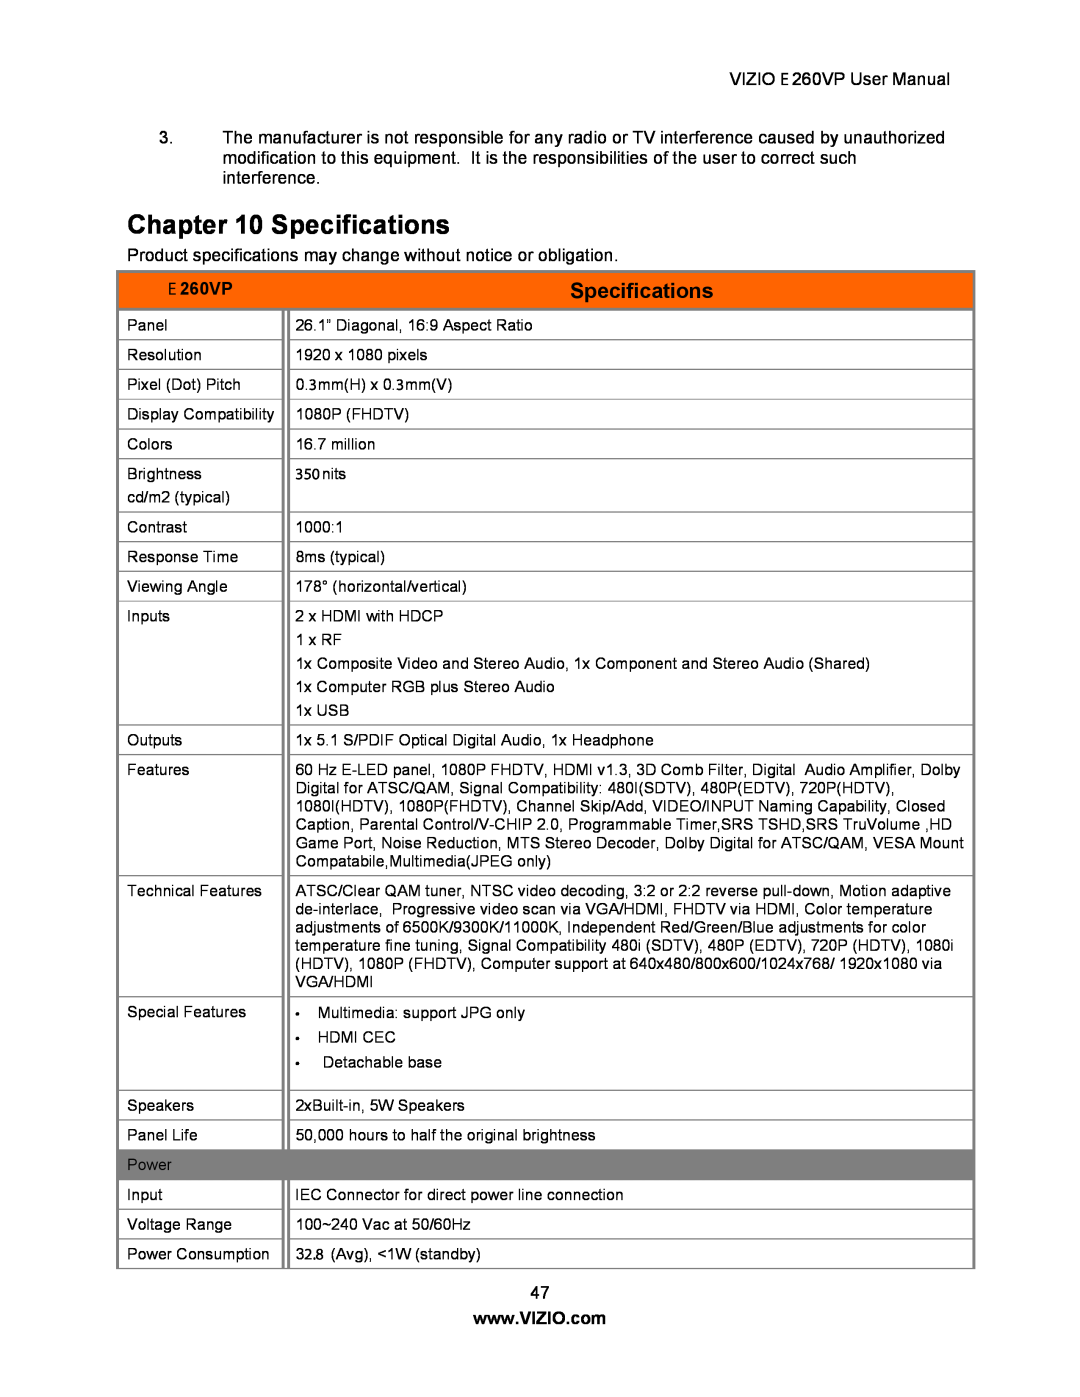 Vizio E260VP user manual Specifications, E 260VP 